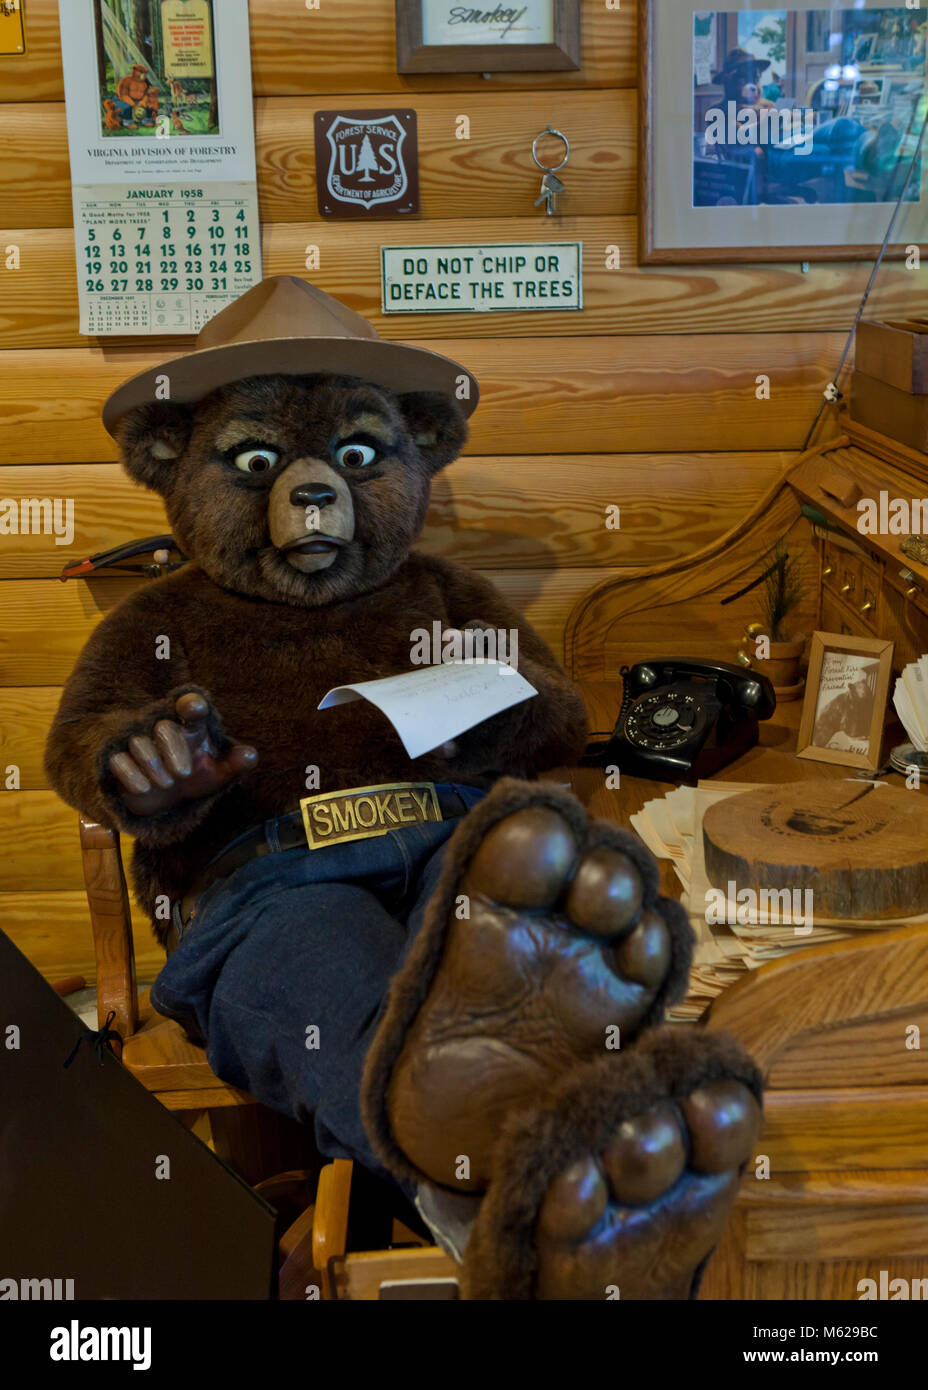 El oso Smokey animatronic sentado en la oficina en el cuartel general del Servicio Forestal de Estados Unidos, Washington, DC, EE.UU. Foto de stock